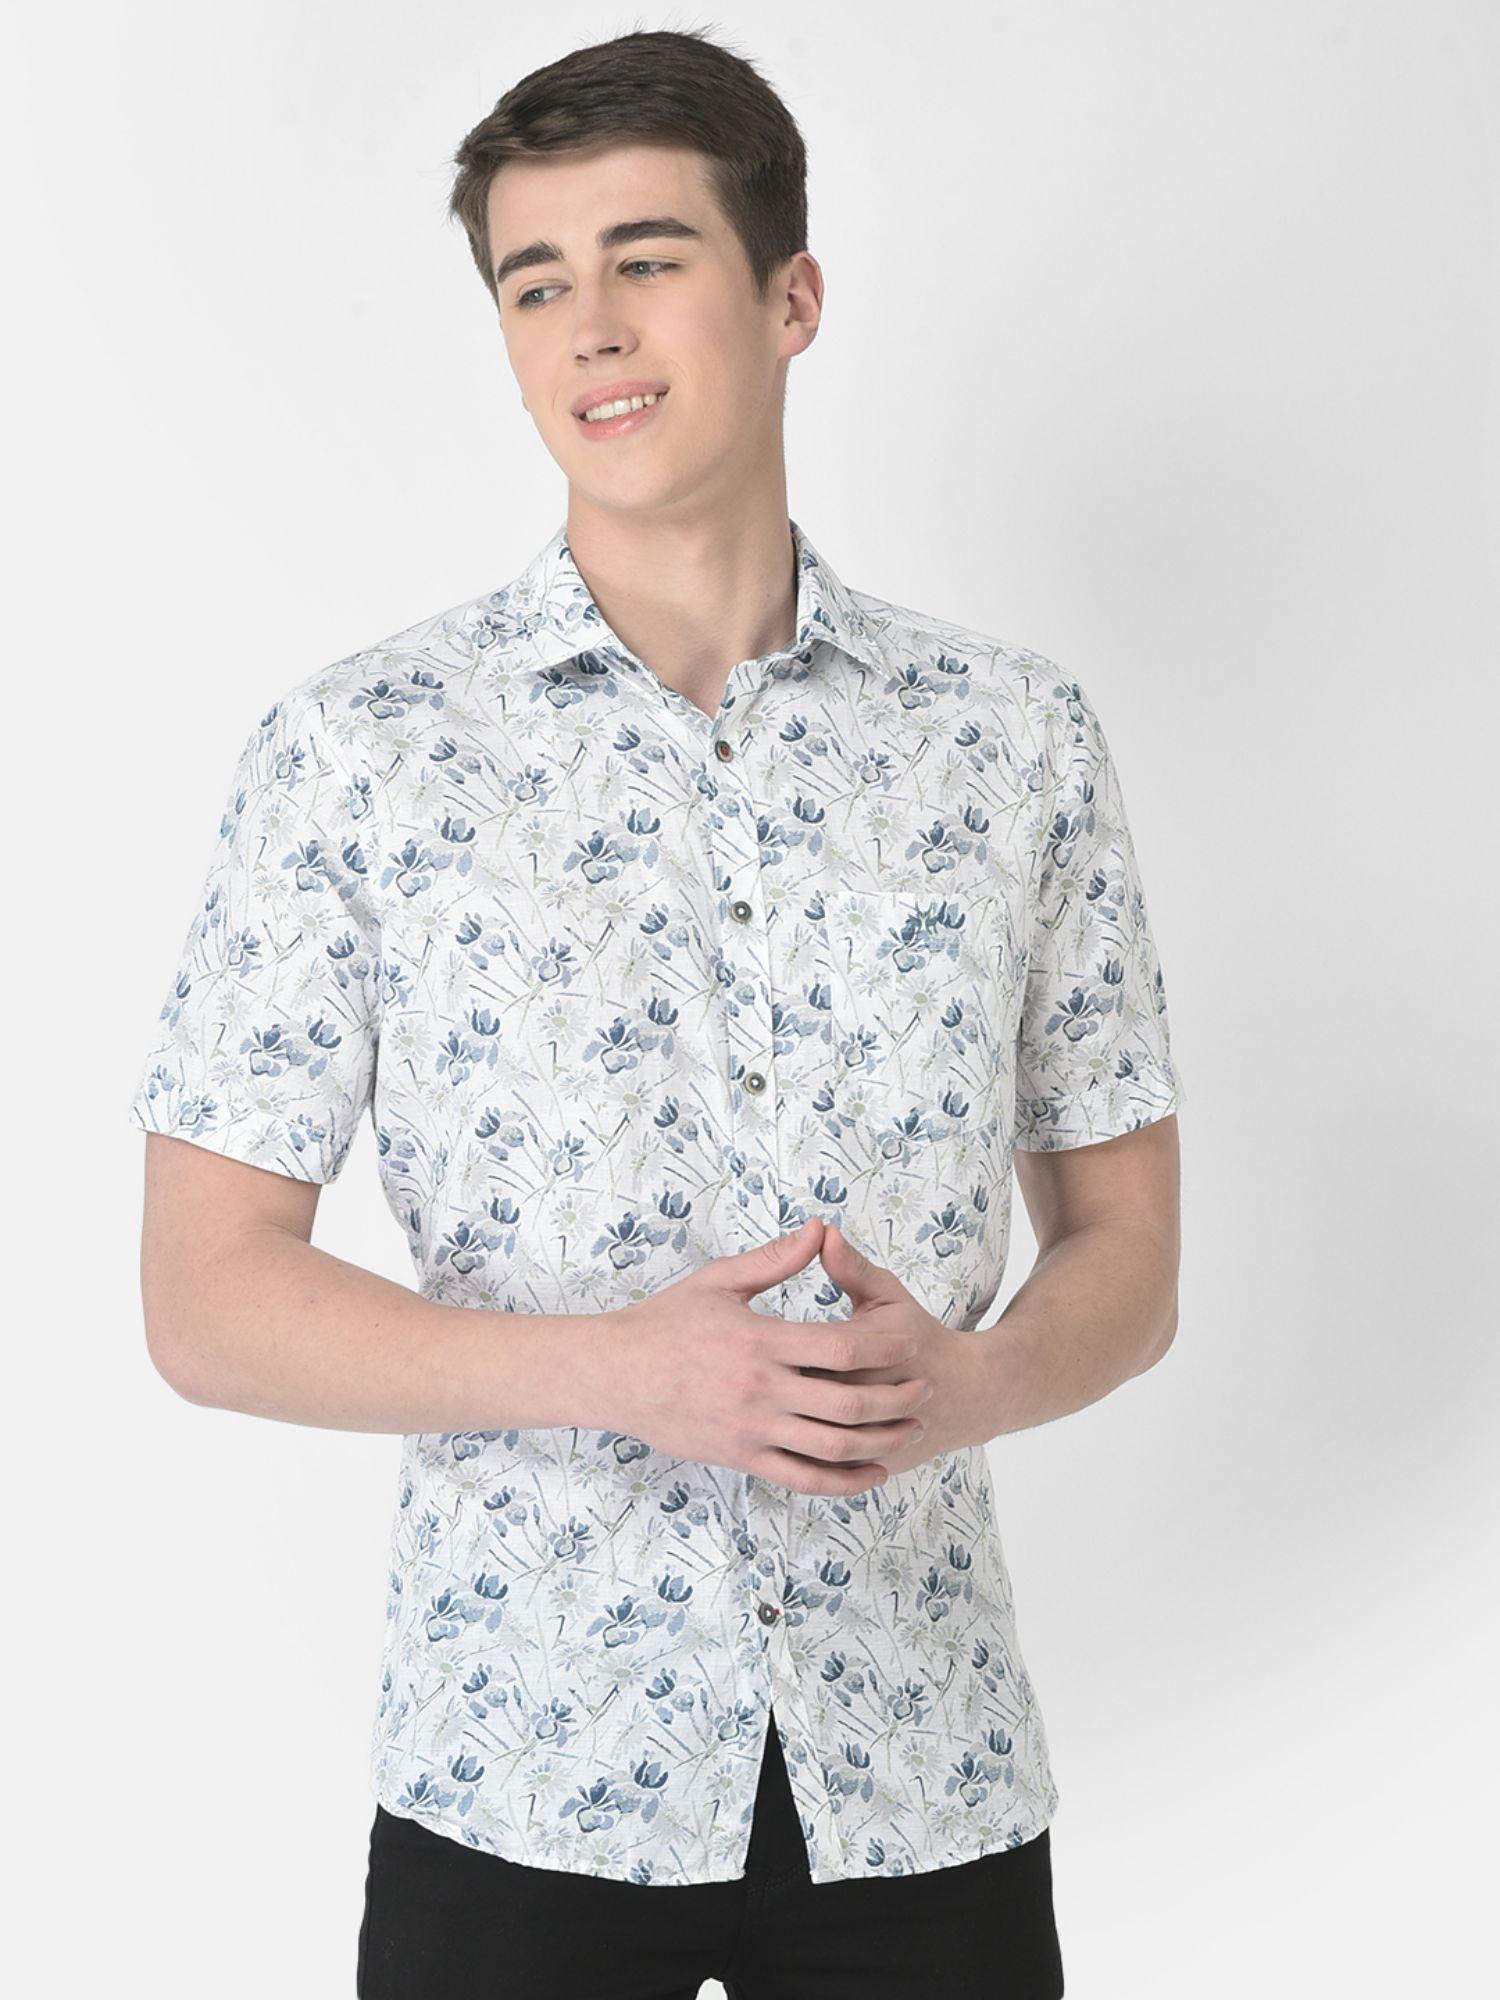 men white short-sleeved floral shirt